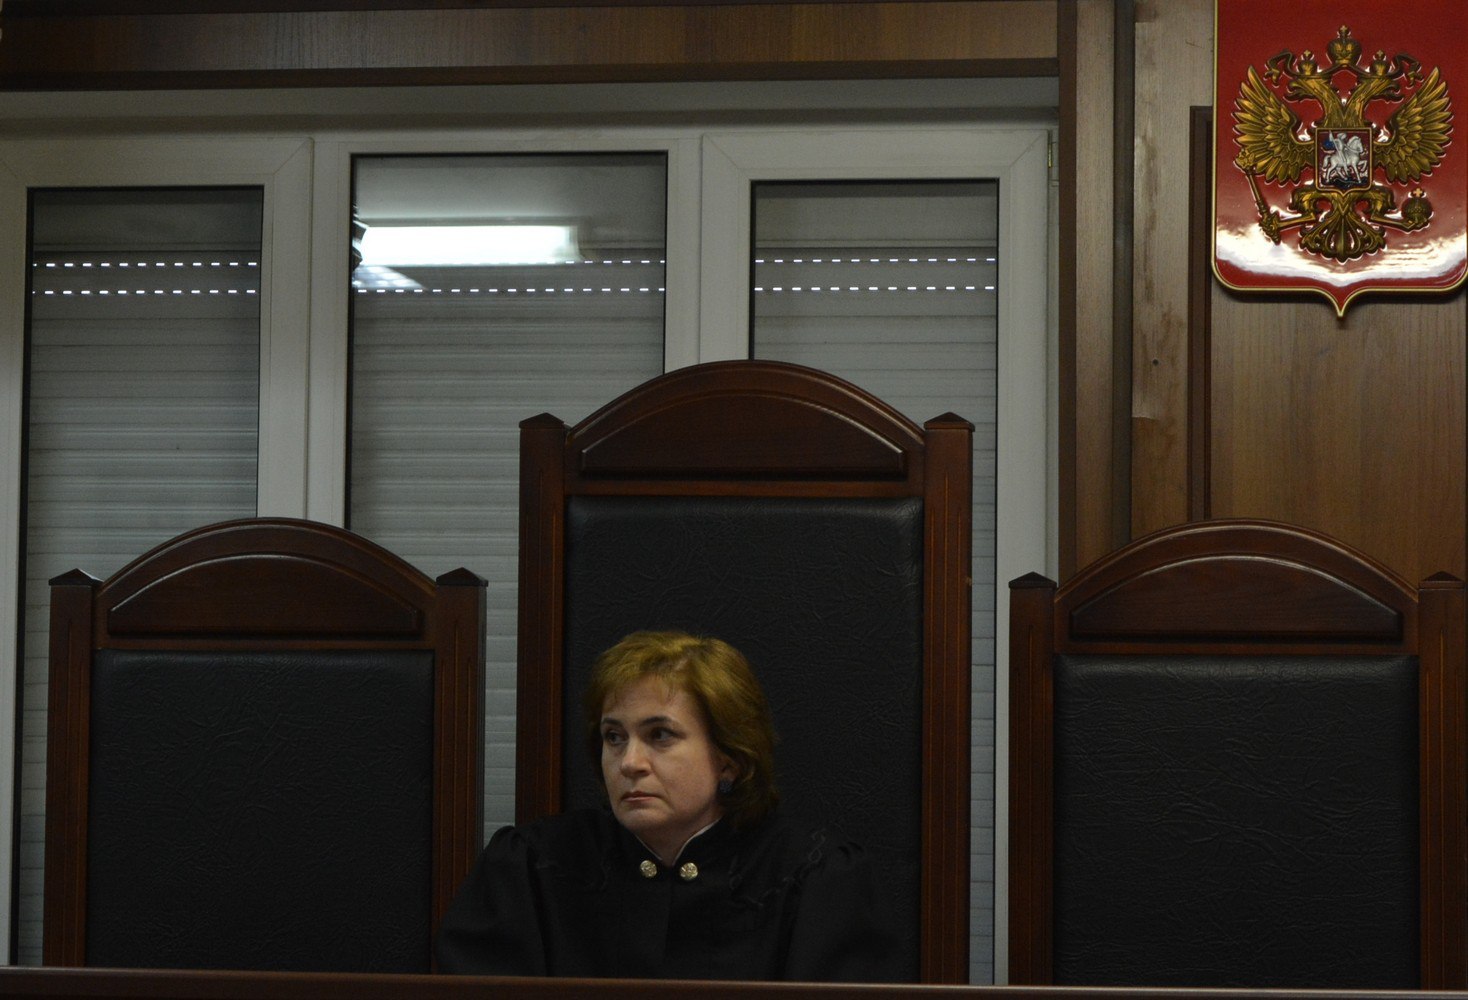 адвокат киселевская в кресле судьи